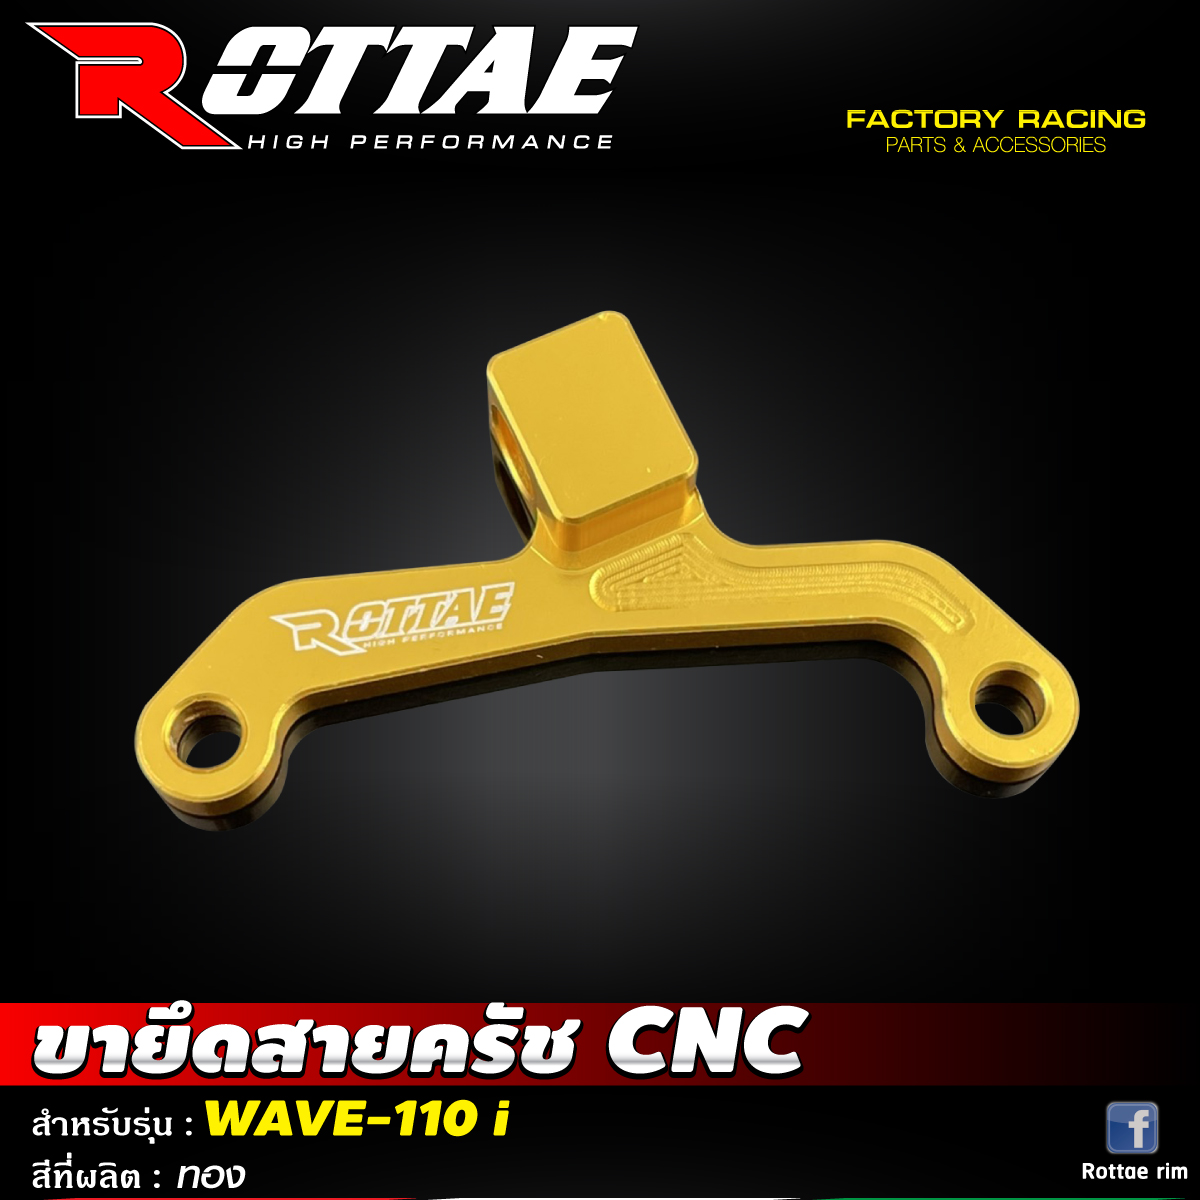 ขายึดสายครัช CNC #WAVE-110 i ROTTAE สี ทอง